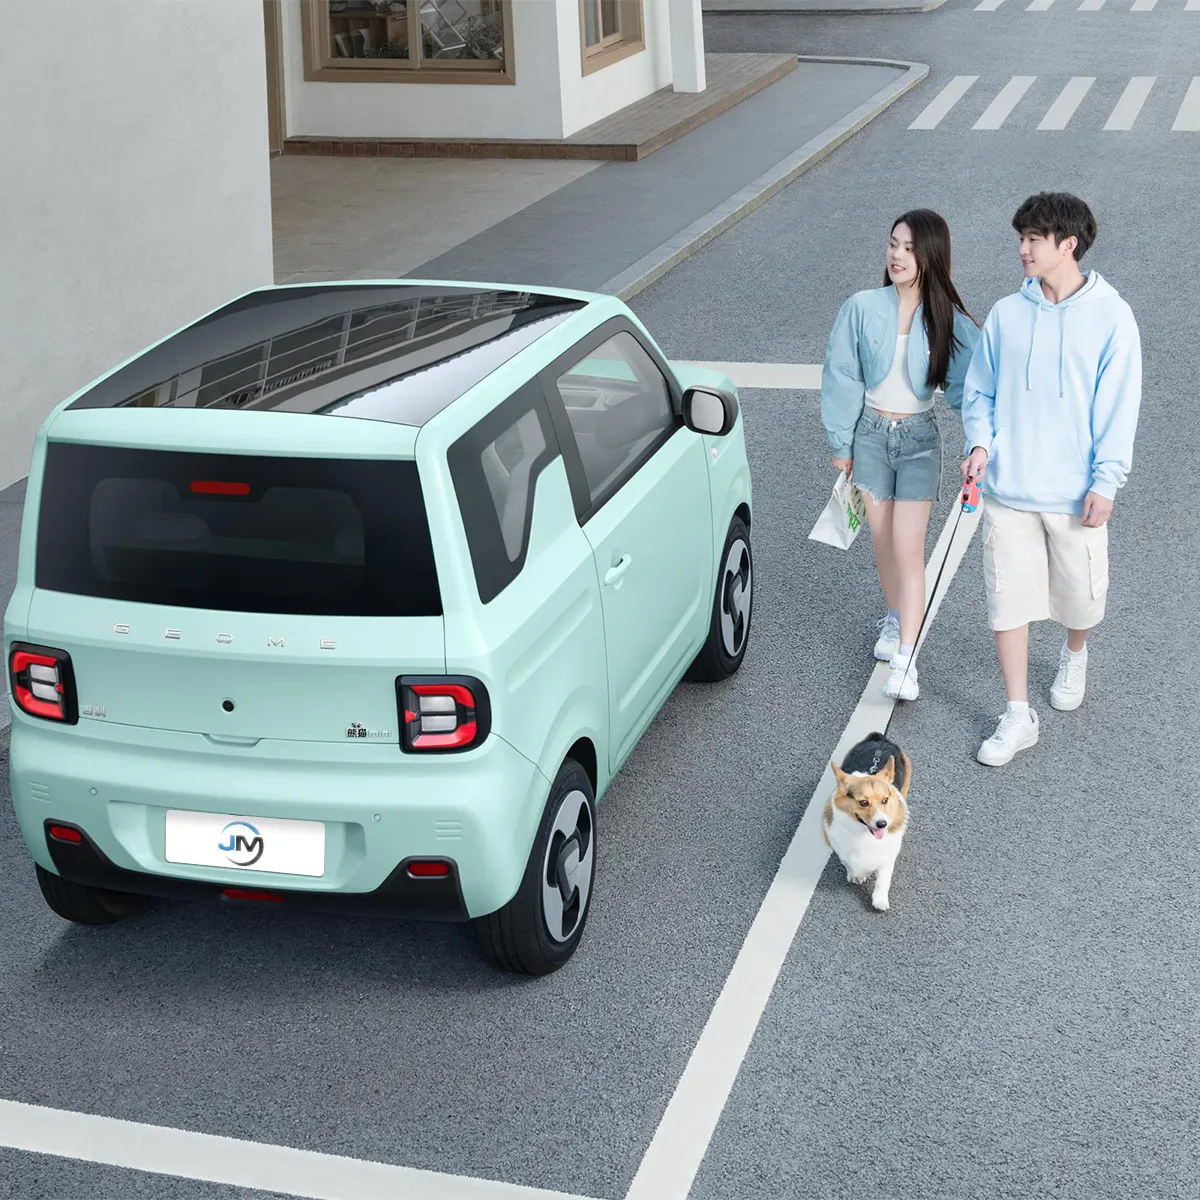 Geely mobil listrik pintar untuk anak perempuan, mobil Panda Mini Ev beruang lucu ekspor kendaraan energi baru